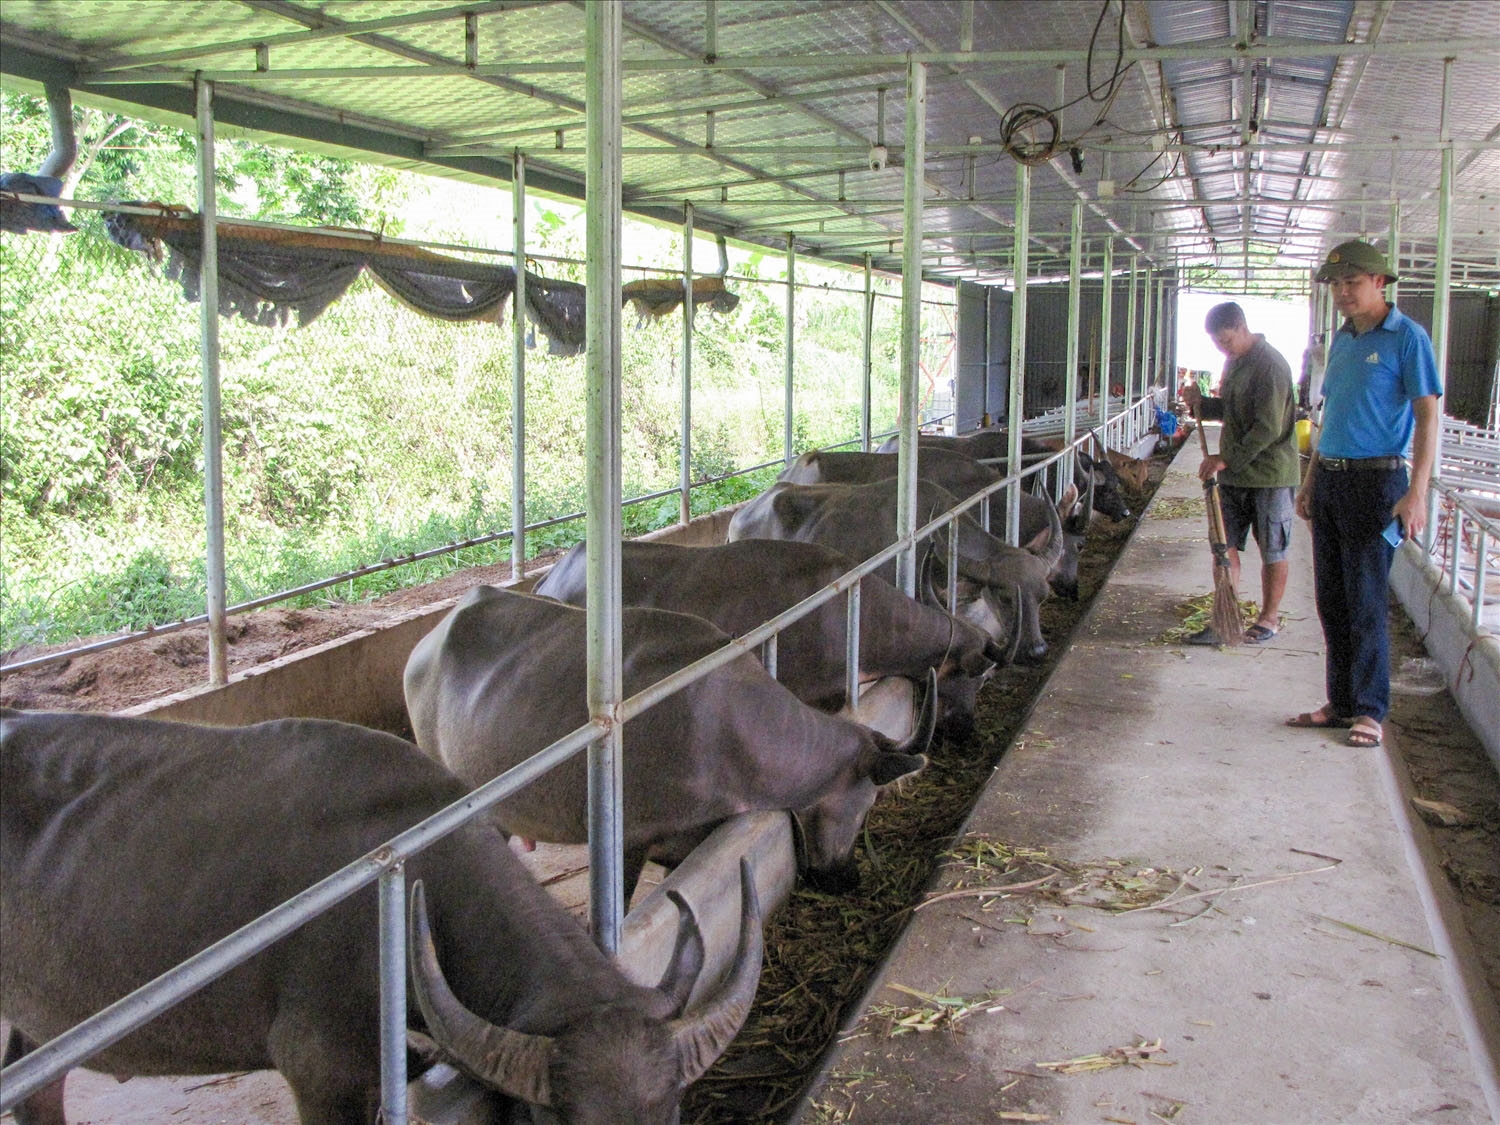 Mô hình chăn nuôi đại gia súc tập trung, hướng đi hiệu quả, mang lại thu nhập cao cho bà con huyện Nậm Nhùn